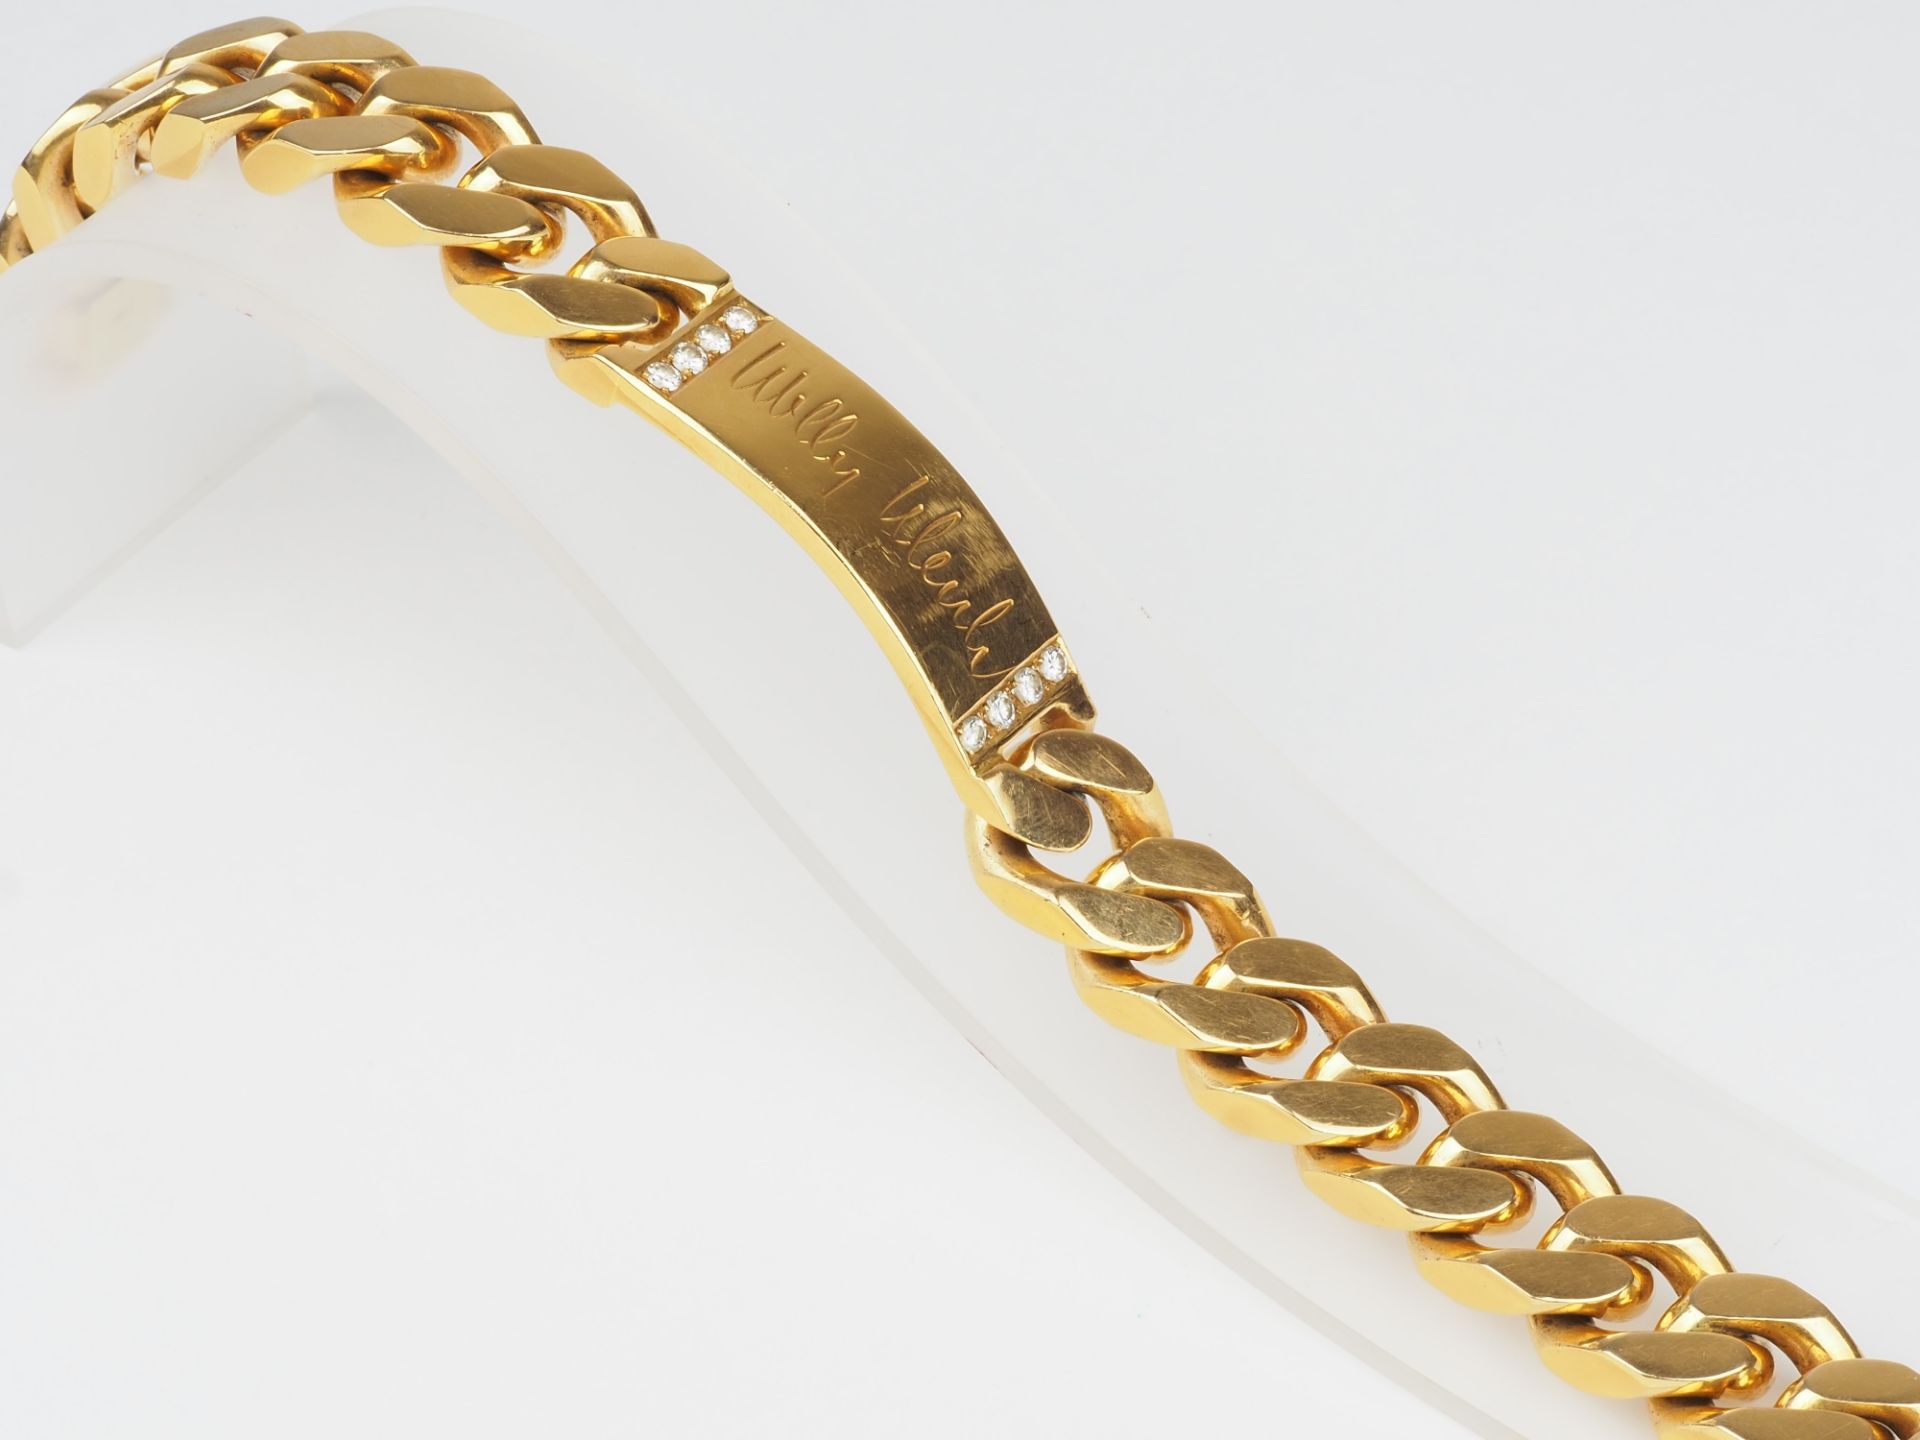 Massives 18kt Gold Armband, Panzerkette mit Monogrammfeld und Diamanten - Bild 4 aus 4